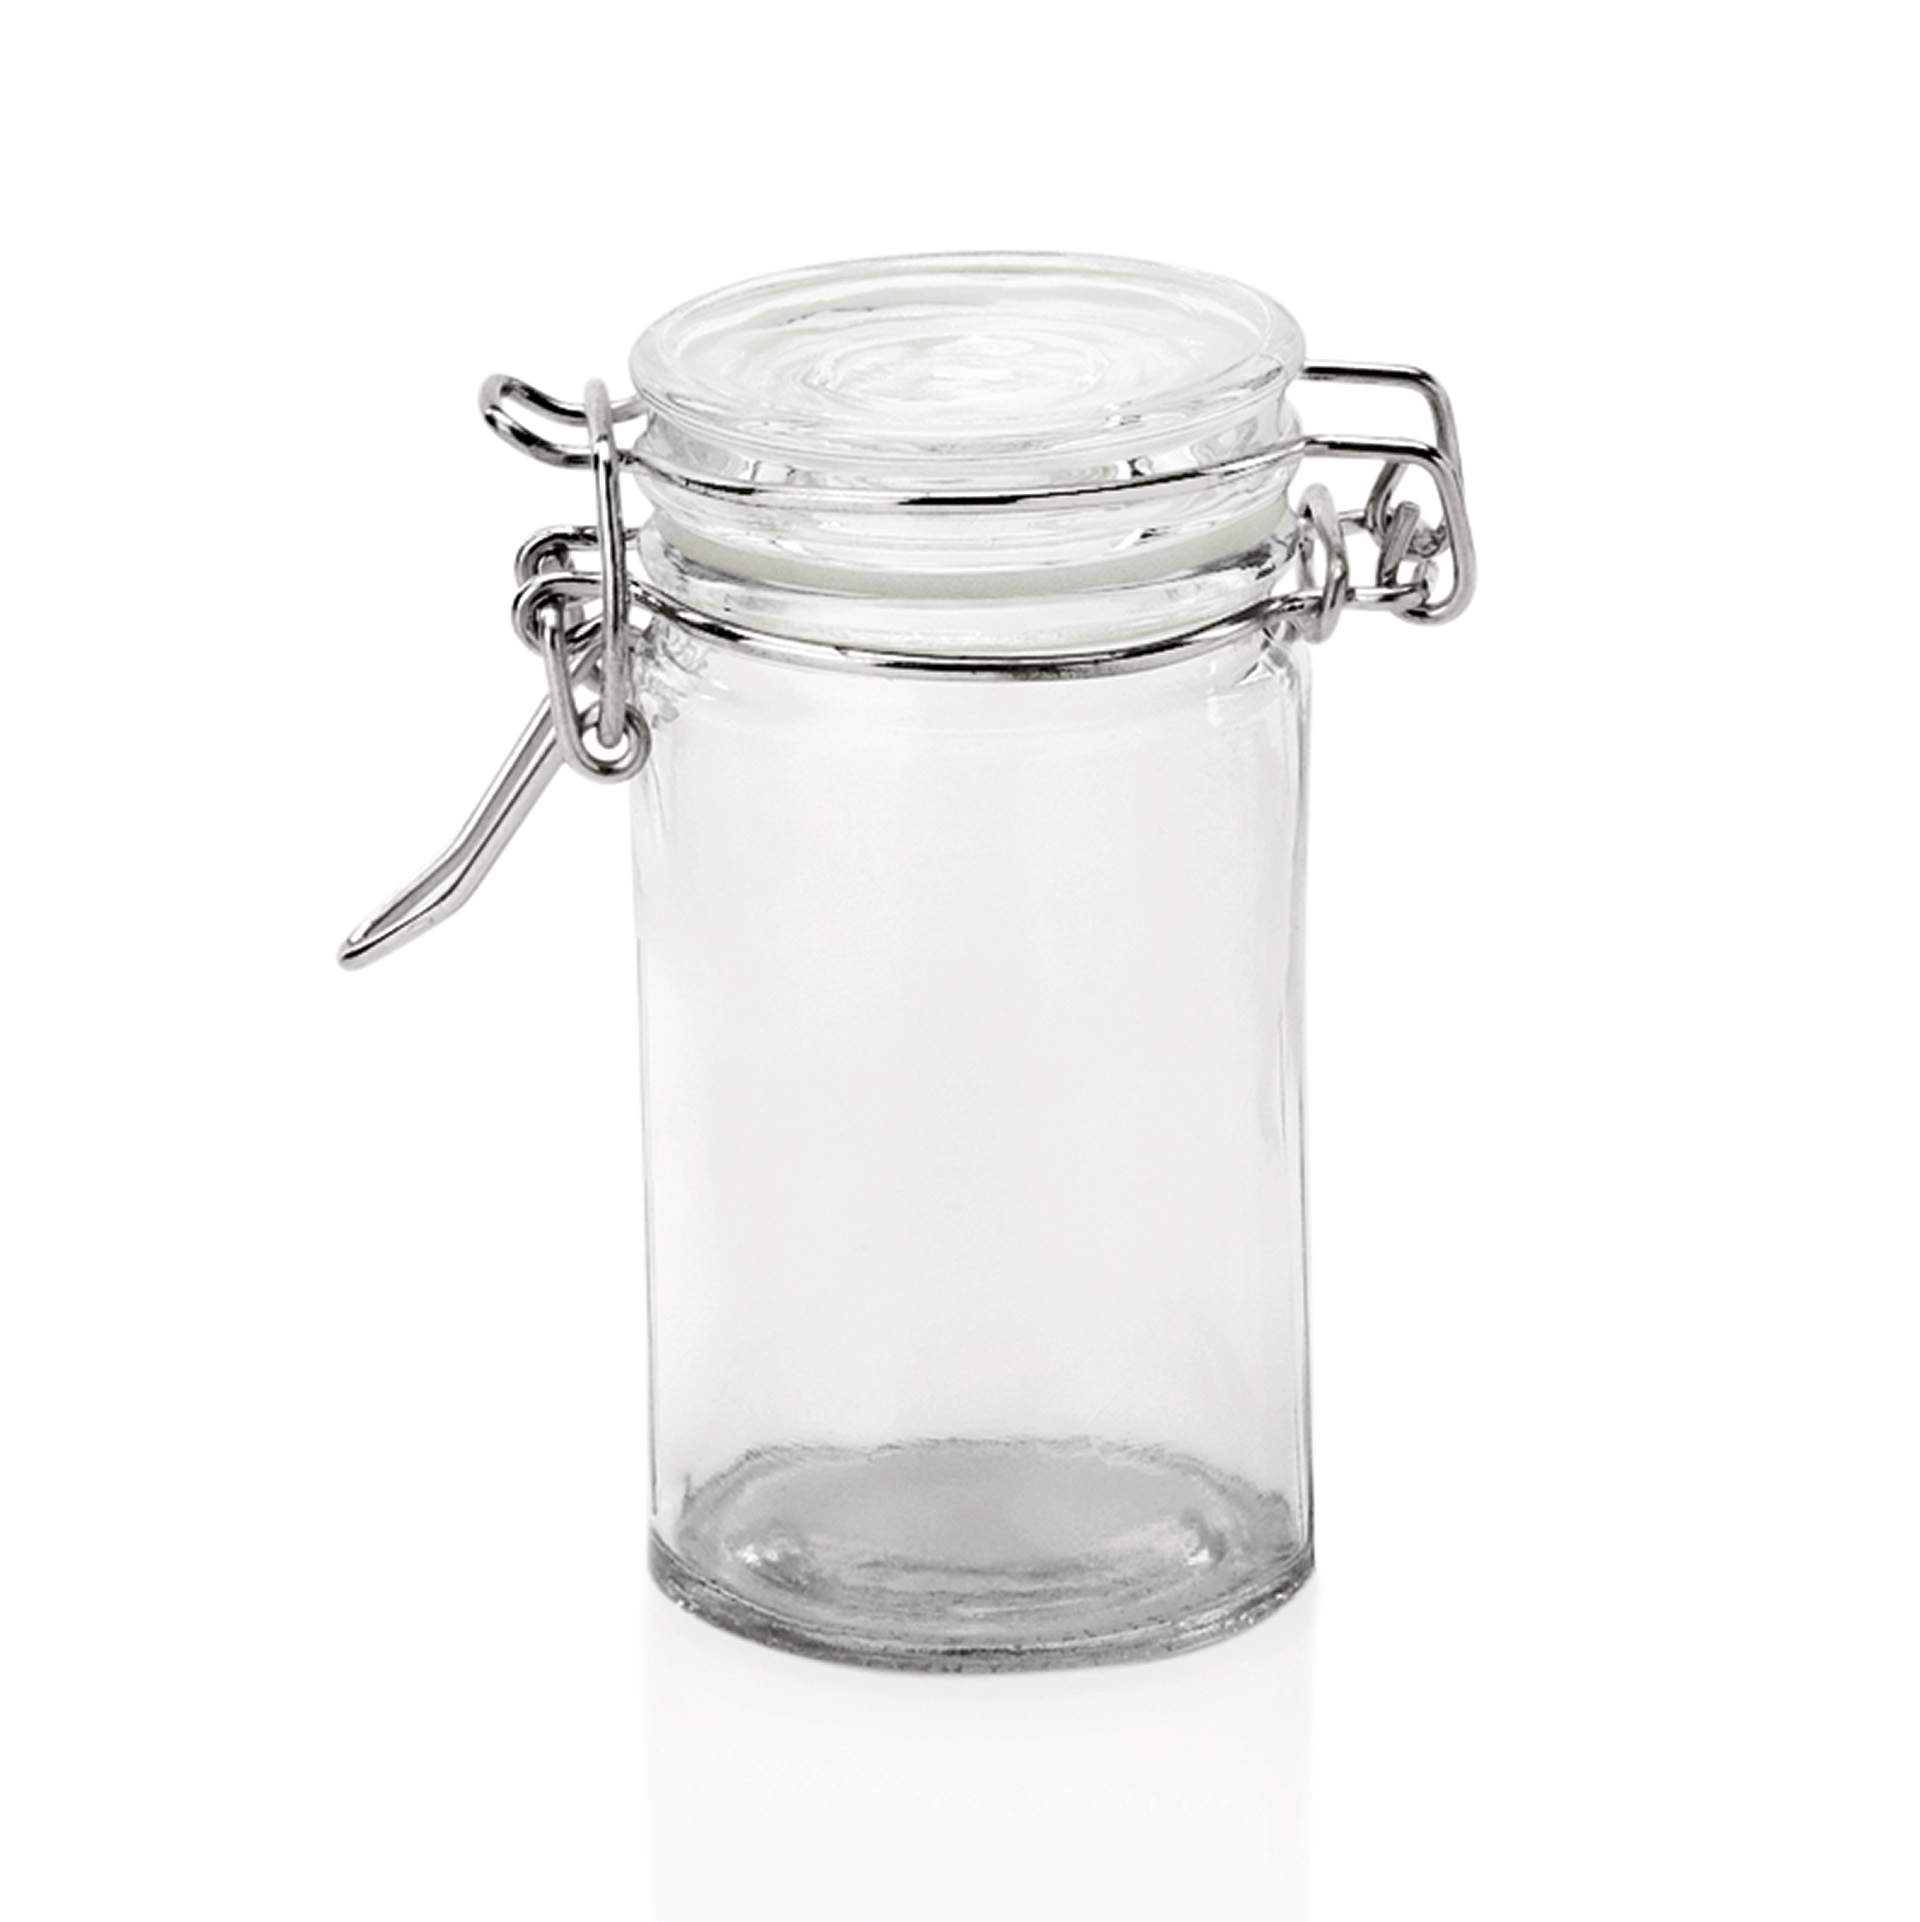 Petit-Bügelverschlussglas - Deckel mit Dichtung - Abm. 8,5 cm - Ø 4,5 cm - Inhalt 0,10 l - Glas - 1786010-A